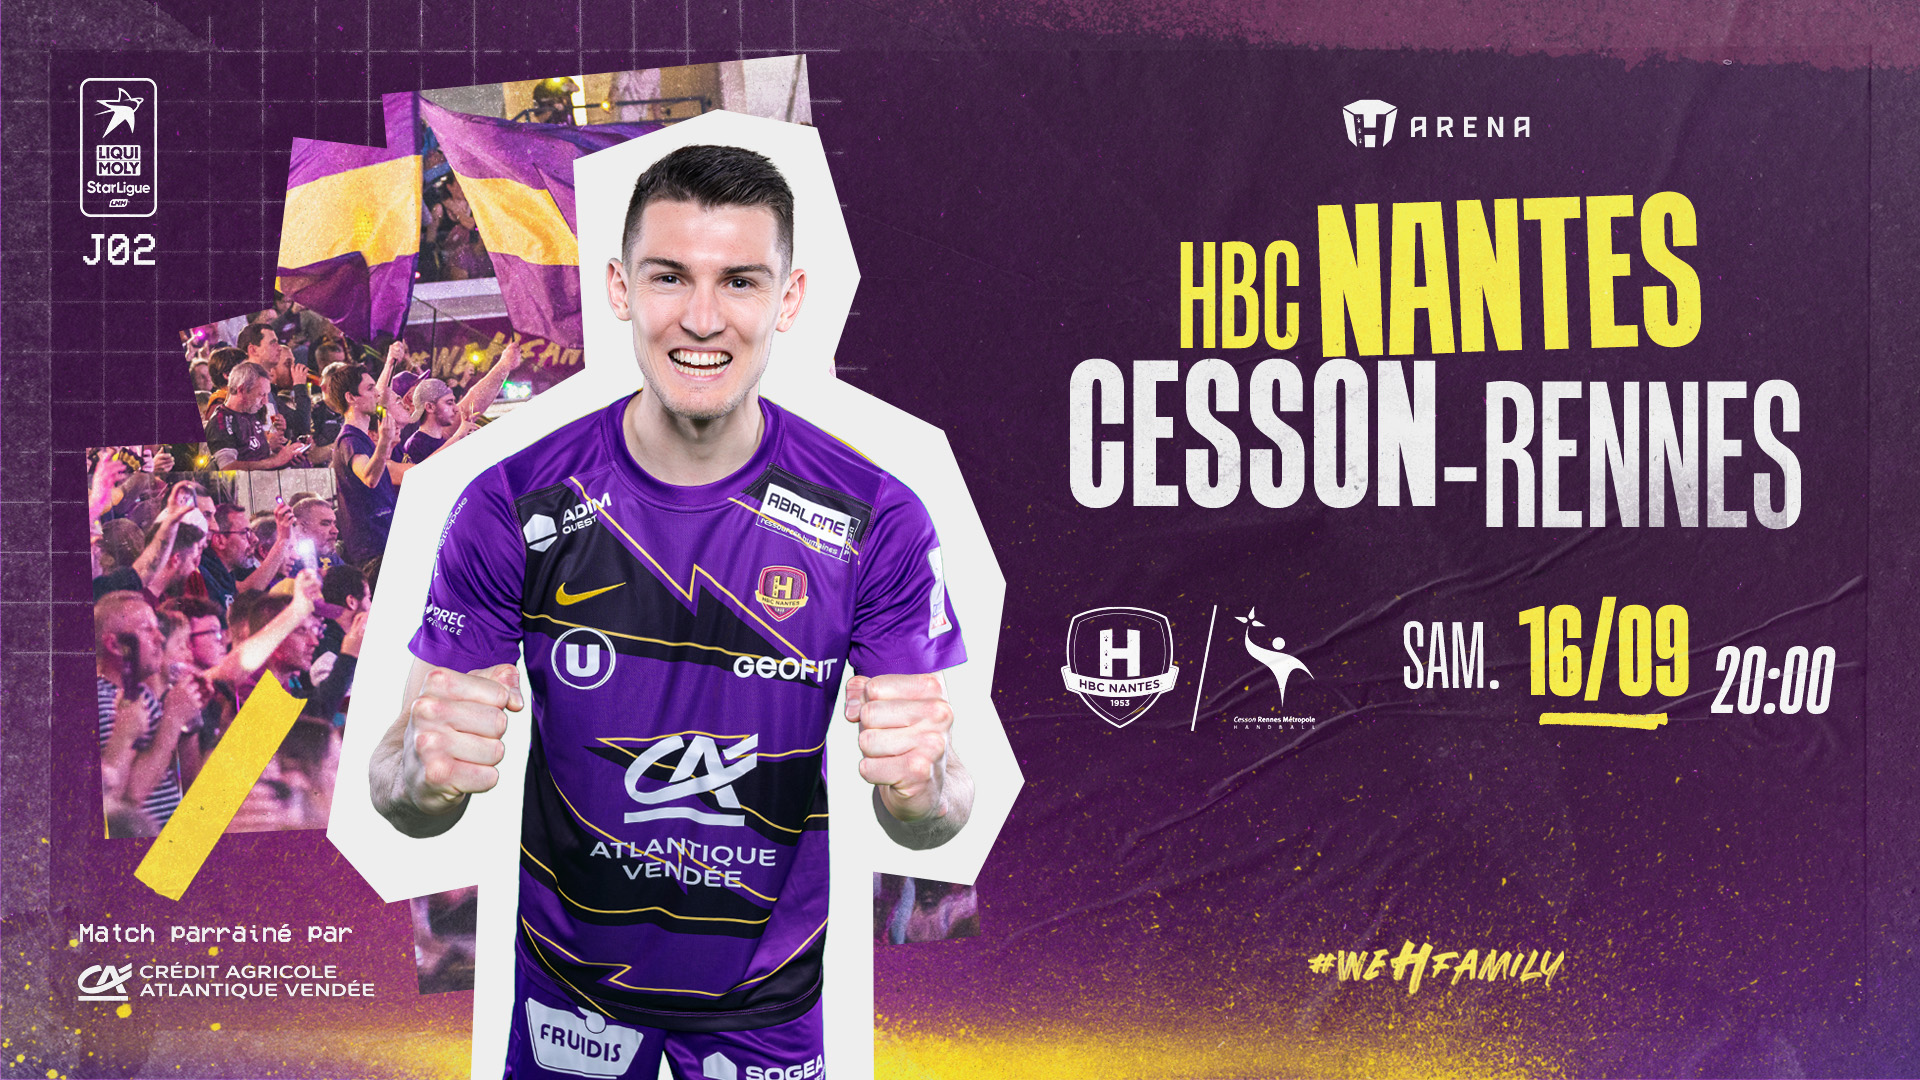 HBC Nantes - Cesson : Infos pratiques